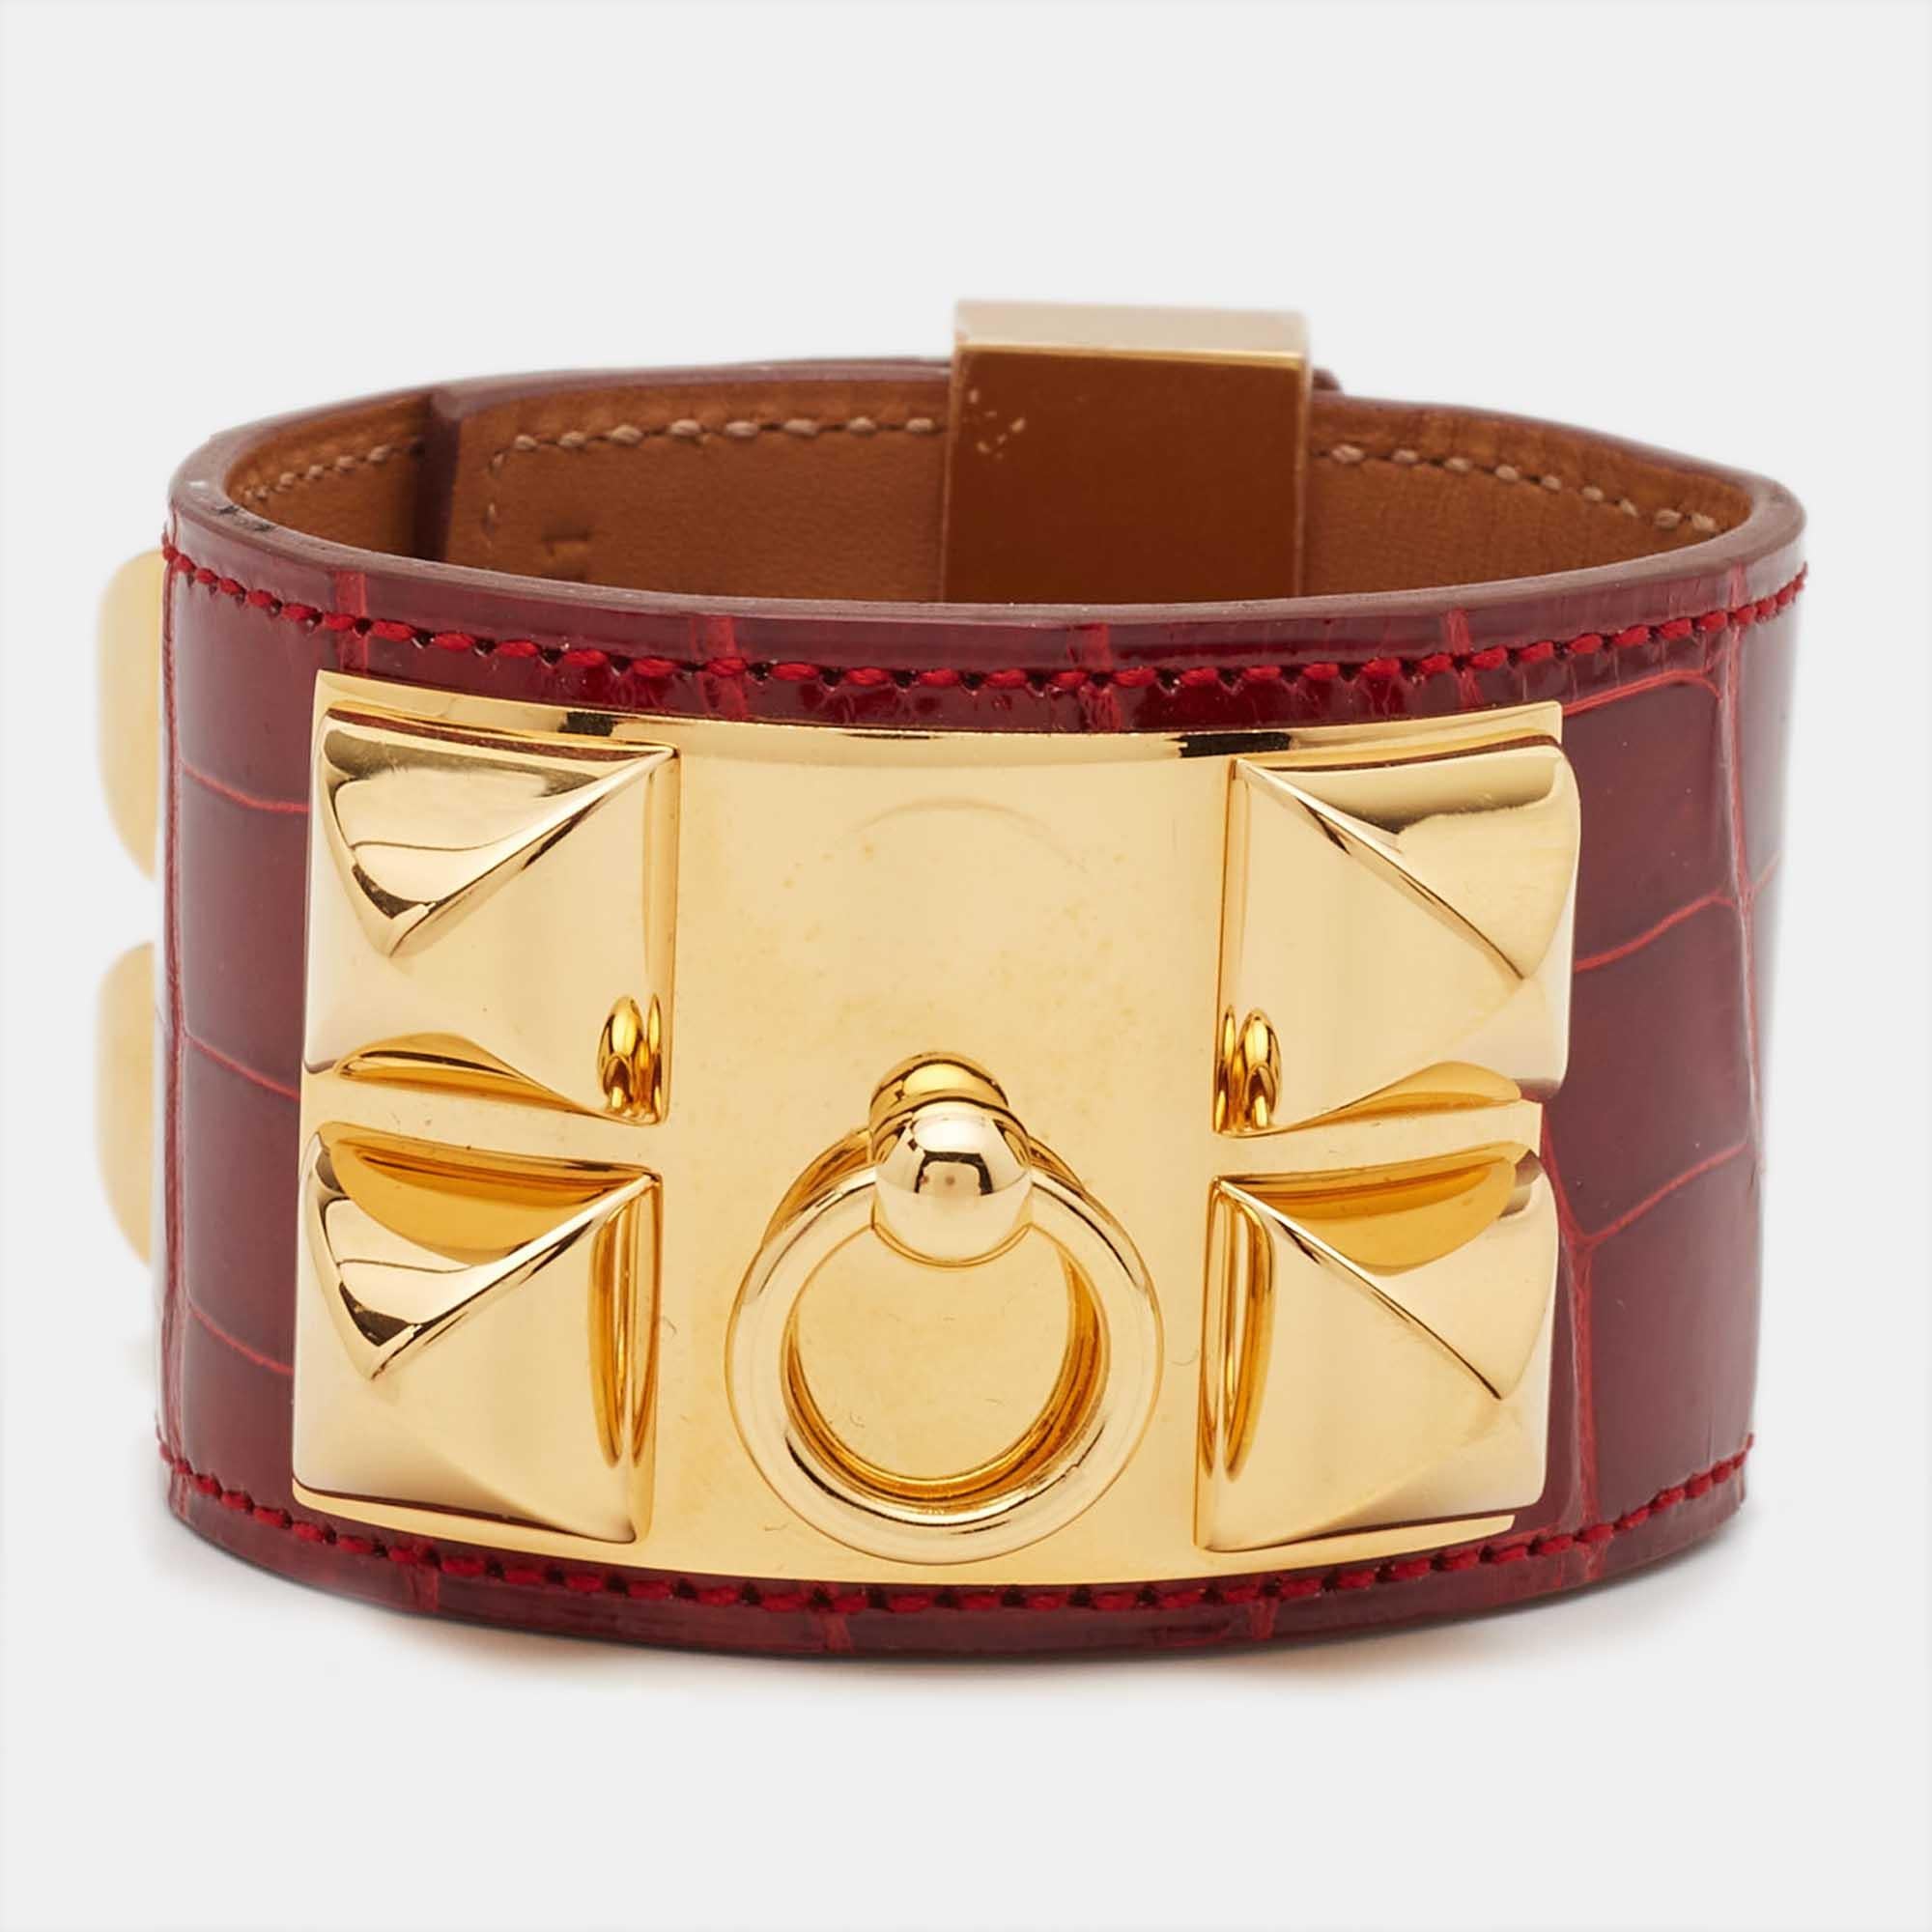 Hermès Collier de Chien Alligator Leather Gold Plated Bracelet 2